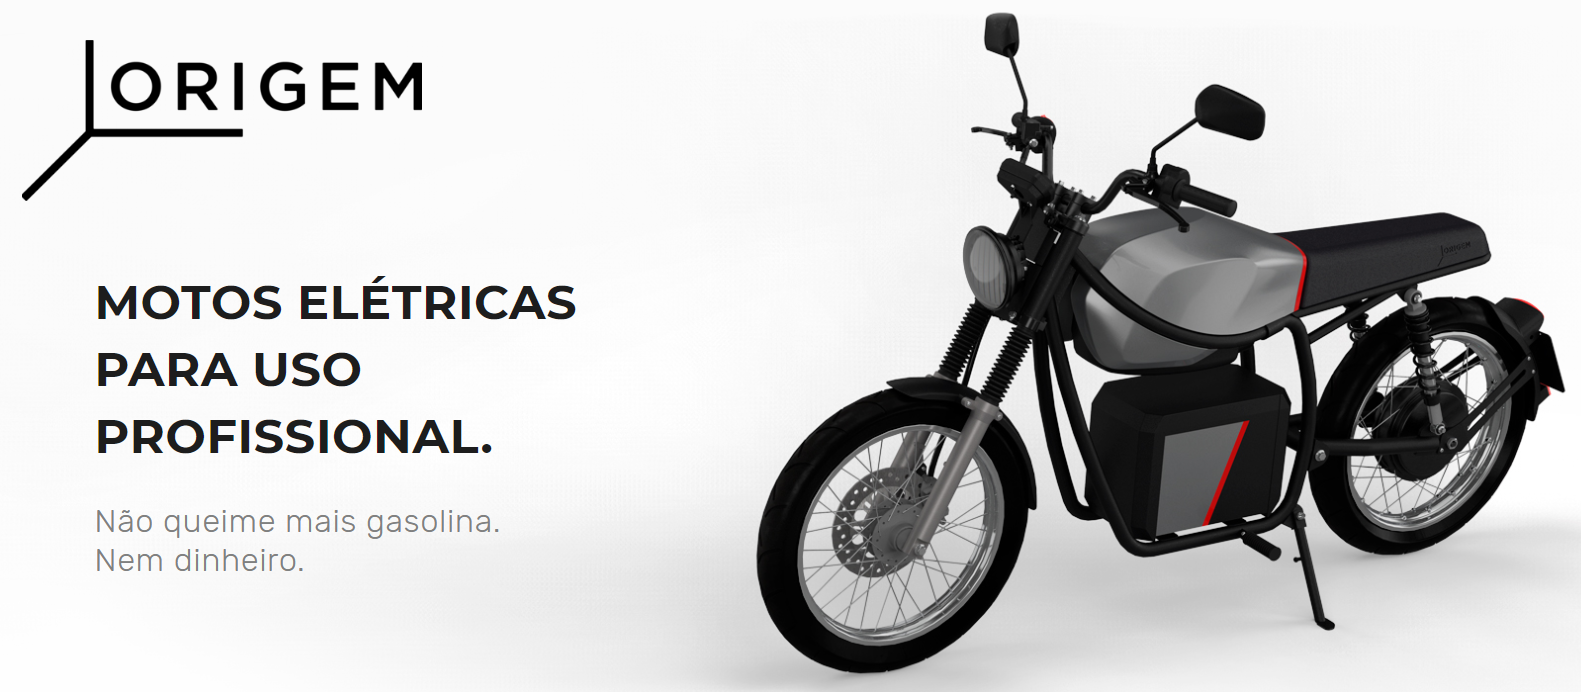 Moto elétrica “made in Brazil” ganha escala de produção com aporte de R$ 5 milhões da Barn